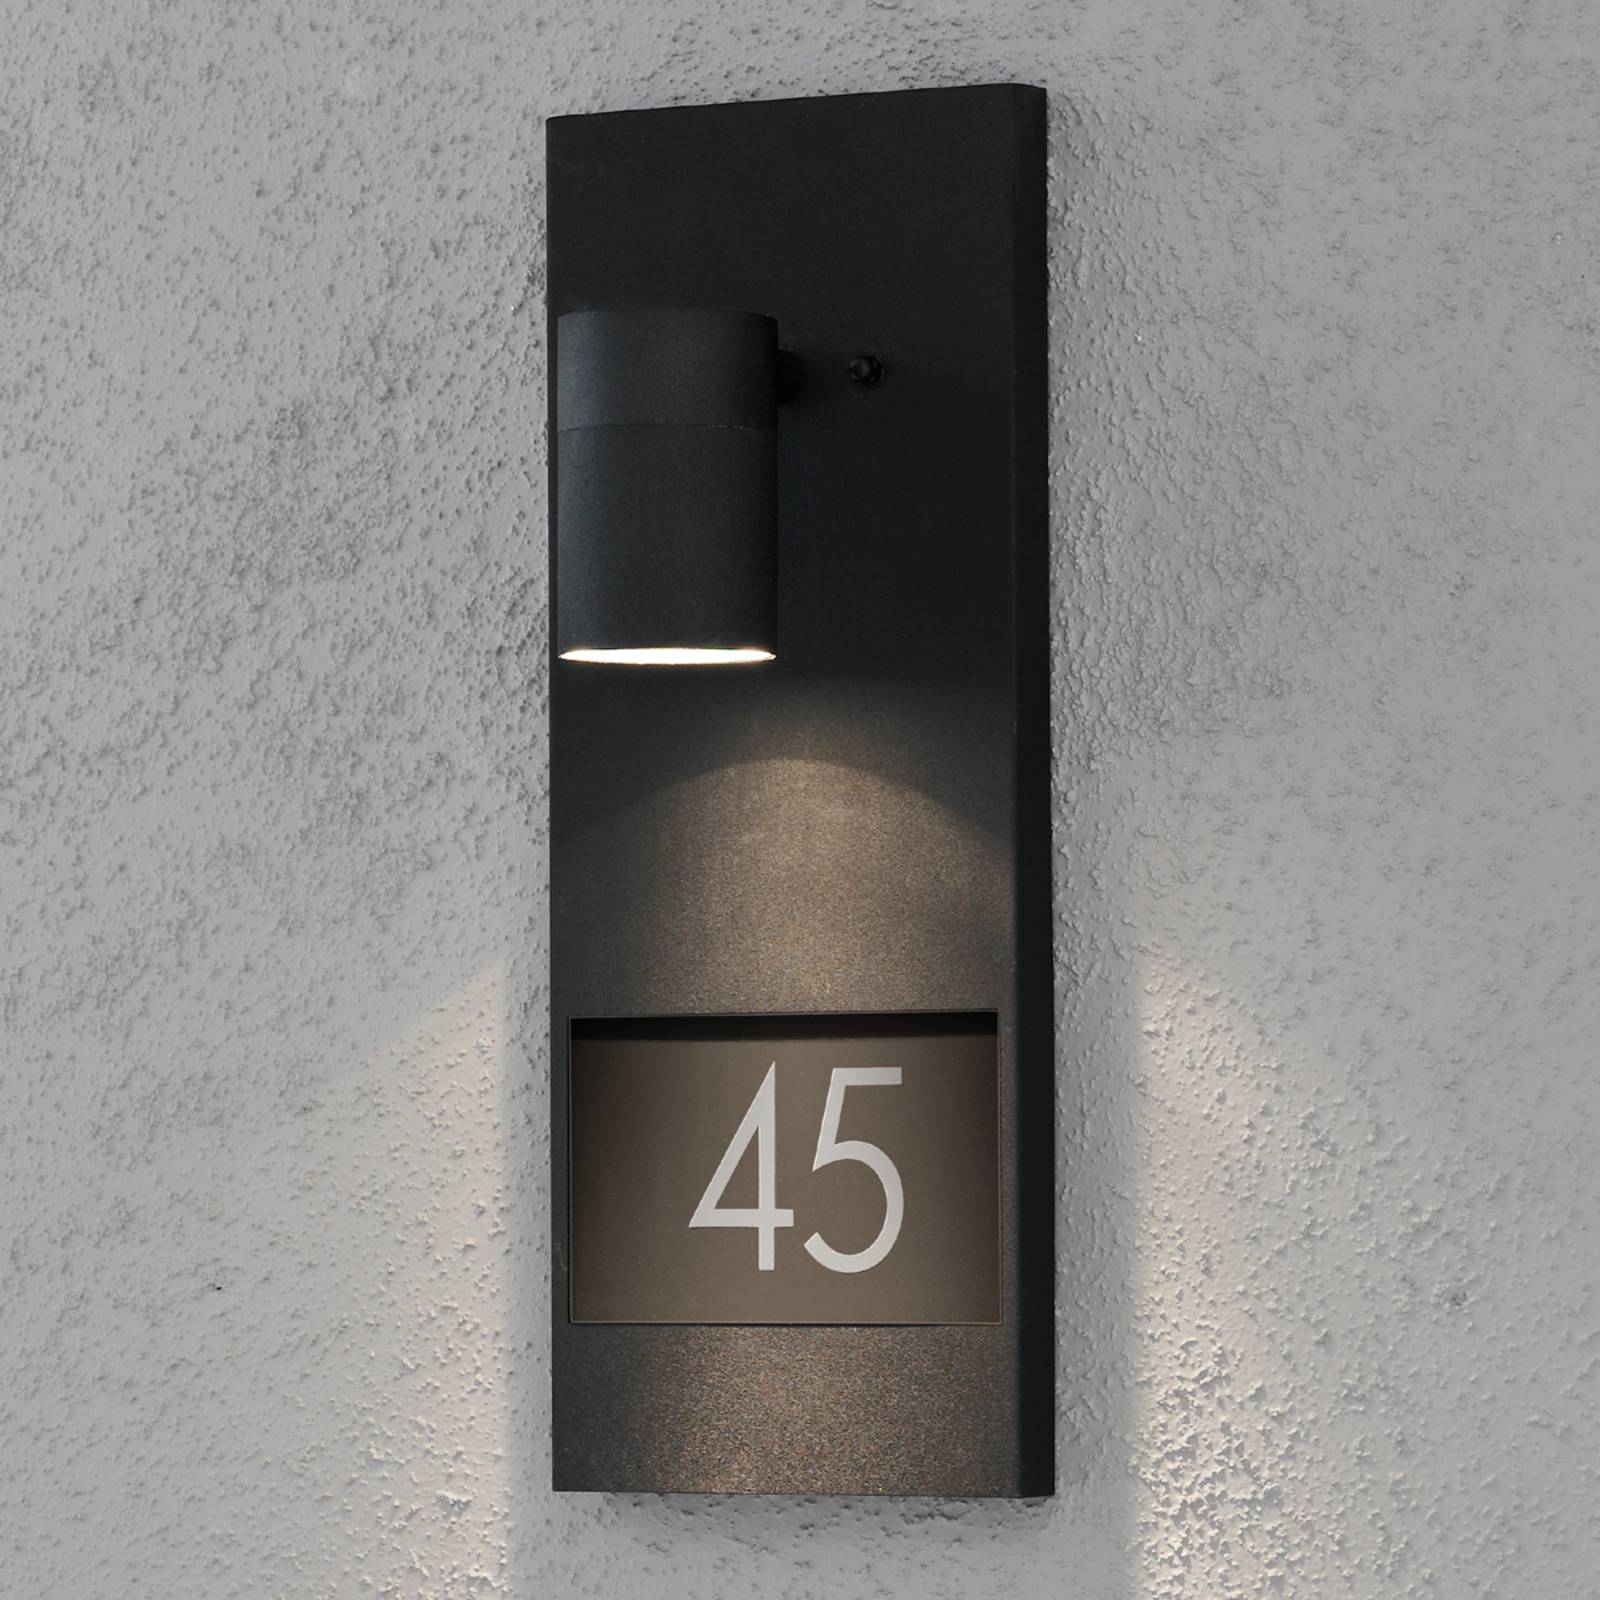 Konstsmide Modena 7655 světlo s domovním číslem, černé